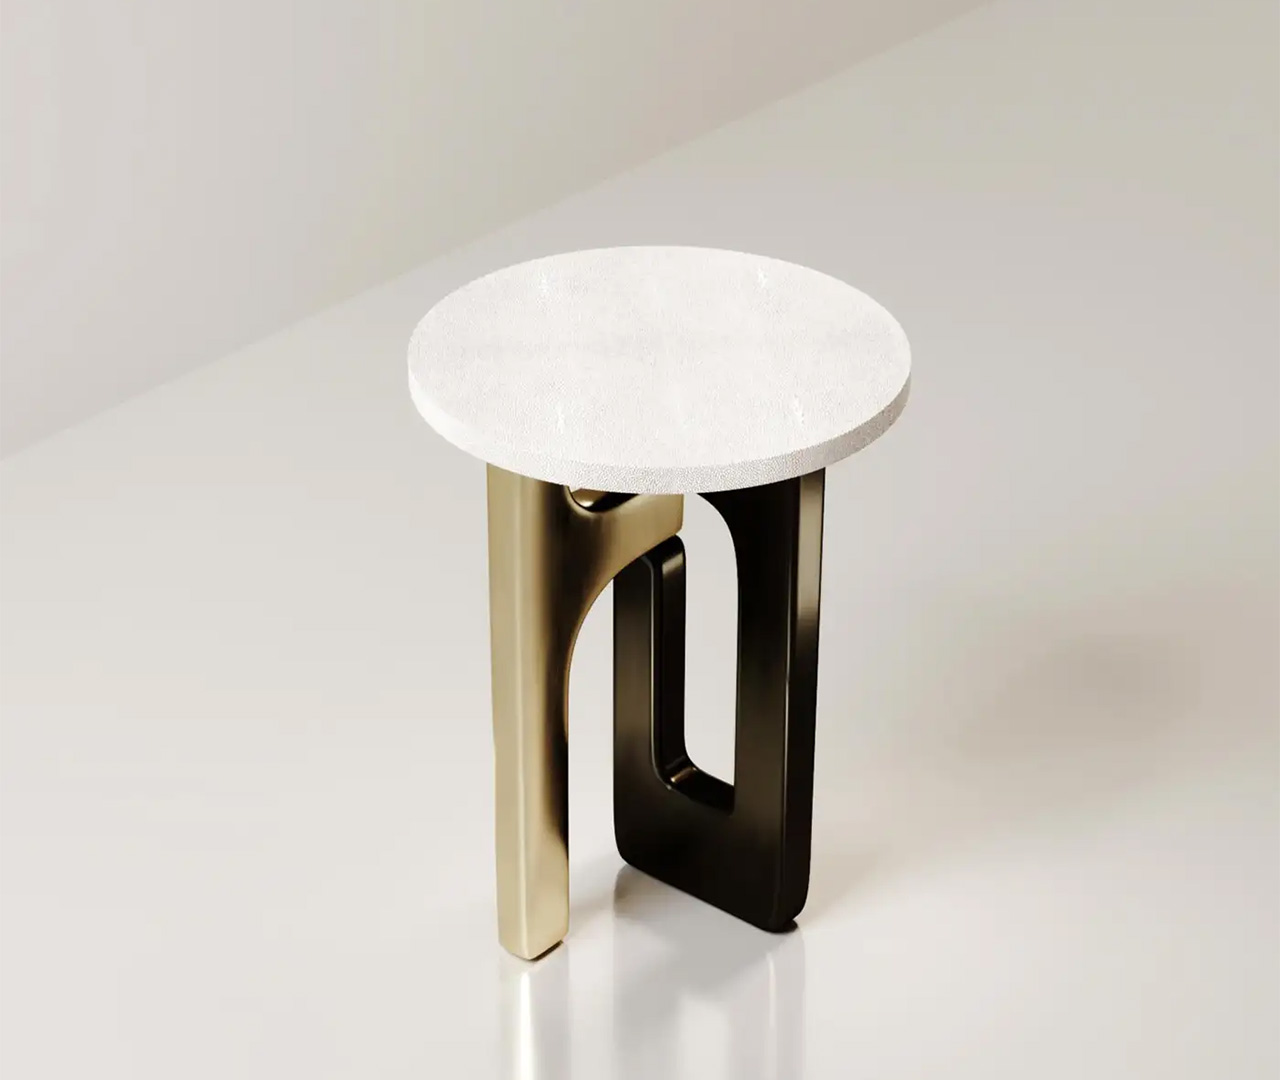 طاولة جانبية بتصميم قاعدة متداخل